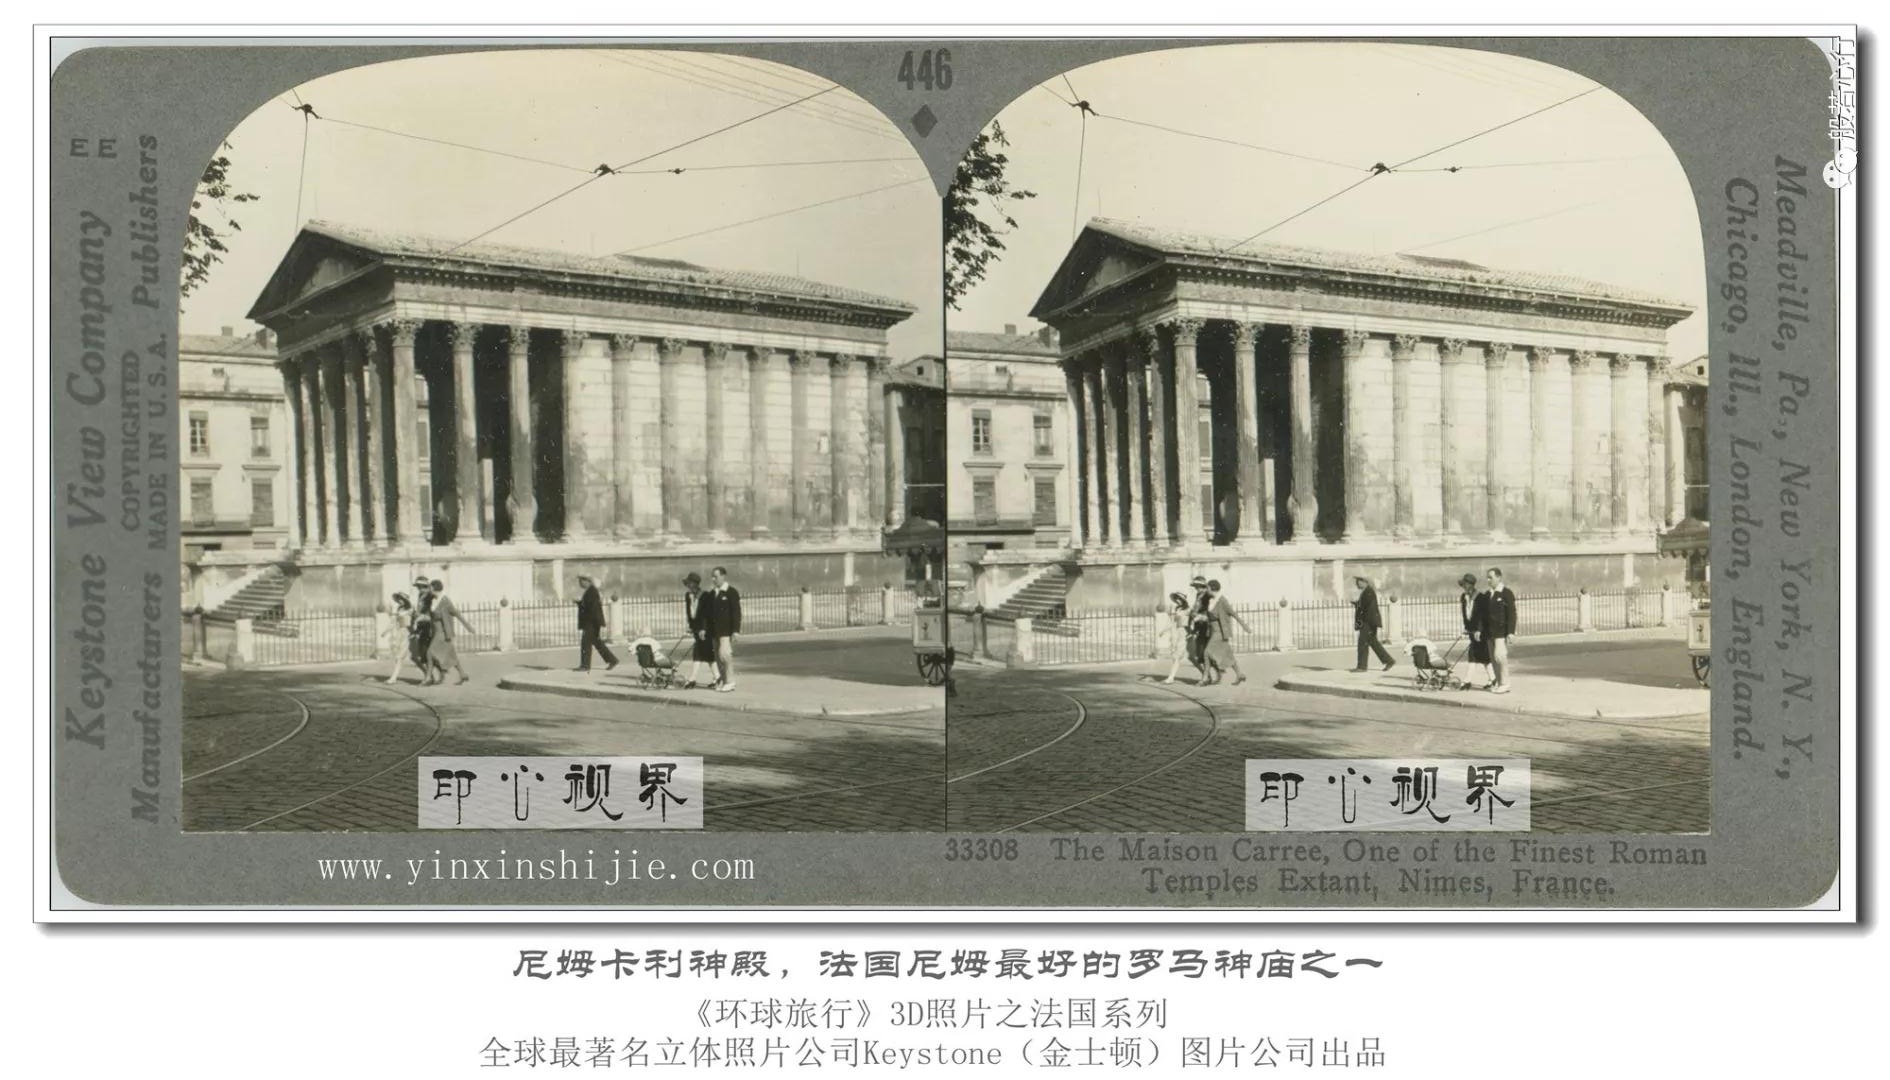 尼姆卡利神殿，法国尼姆最好的罗马神庙之一 -1936年3D版《环球旅行》立体照片